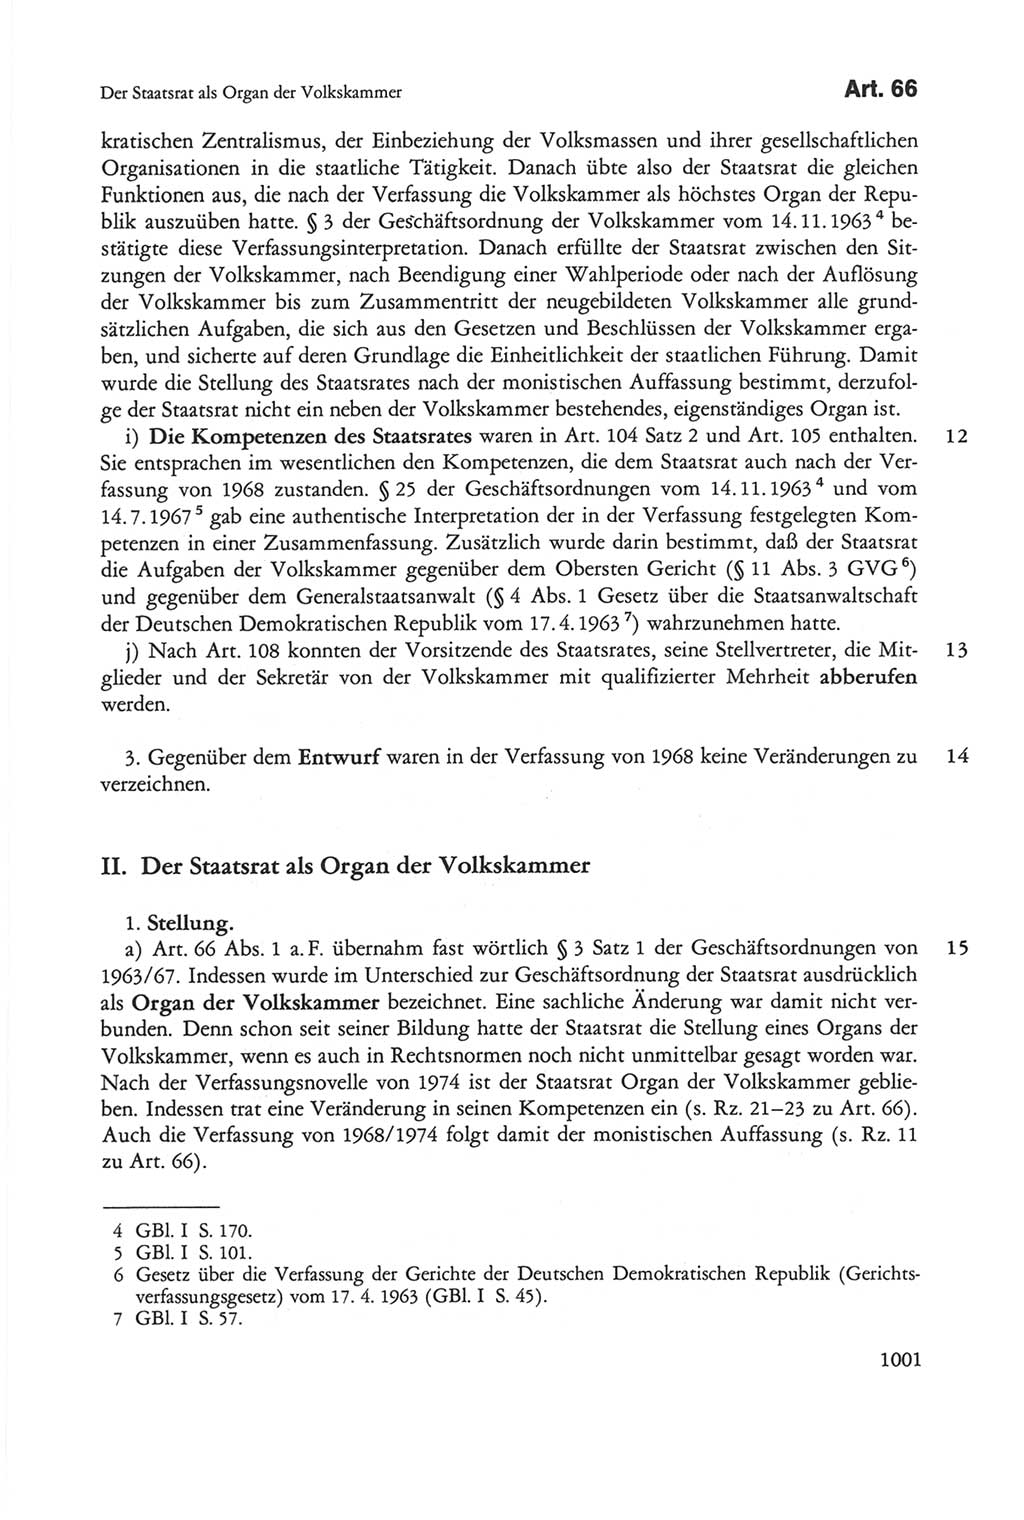 Die sozialistische Verfassung der Deutschen Demokratischen Republik (DDR), Kommentar mit einem Nachtrag 1997, Seite 1001 (Soz. Verf. DDR Komm. Nachtr. 1997, S. 1001)